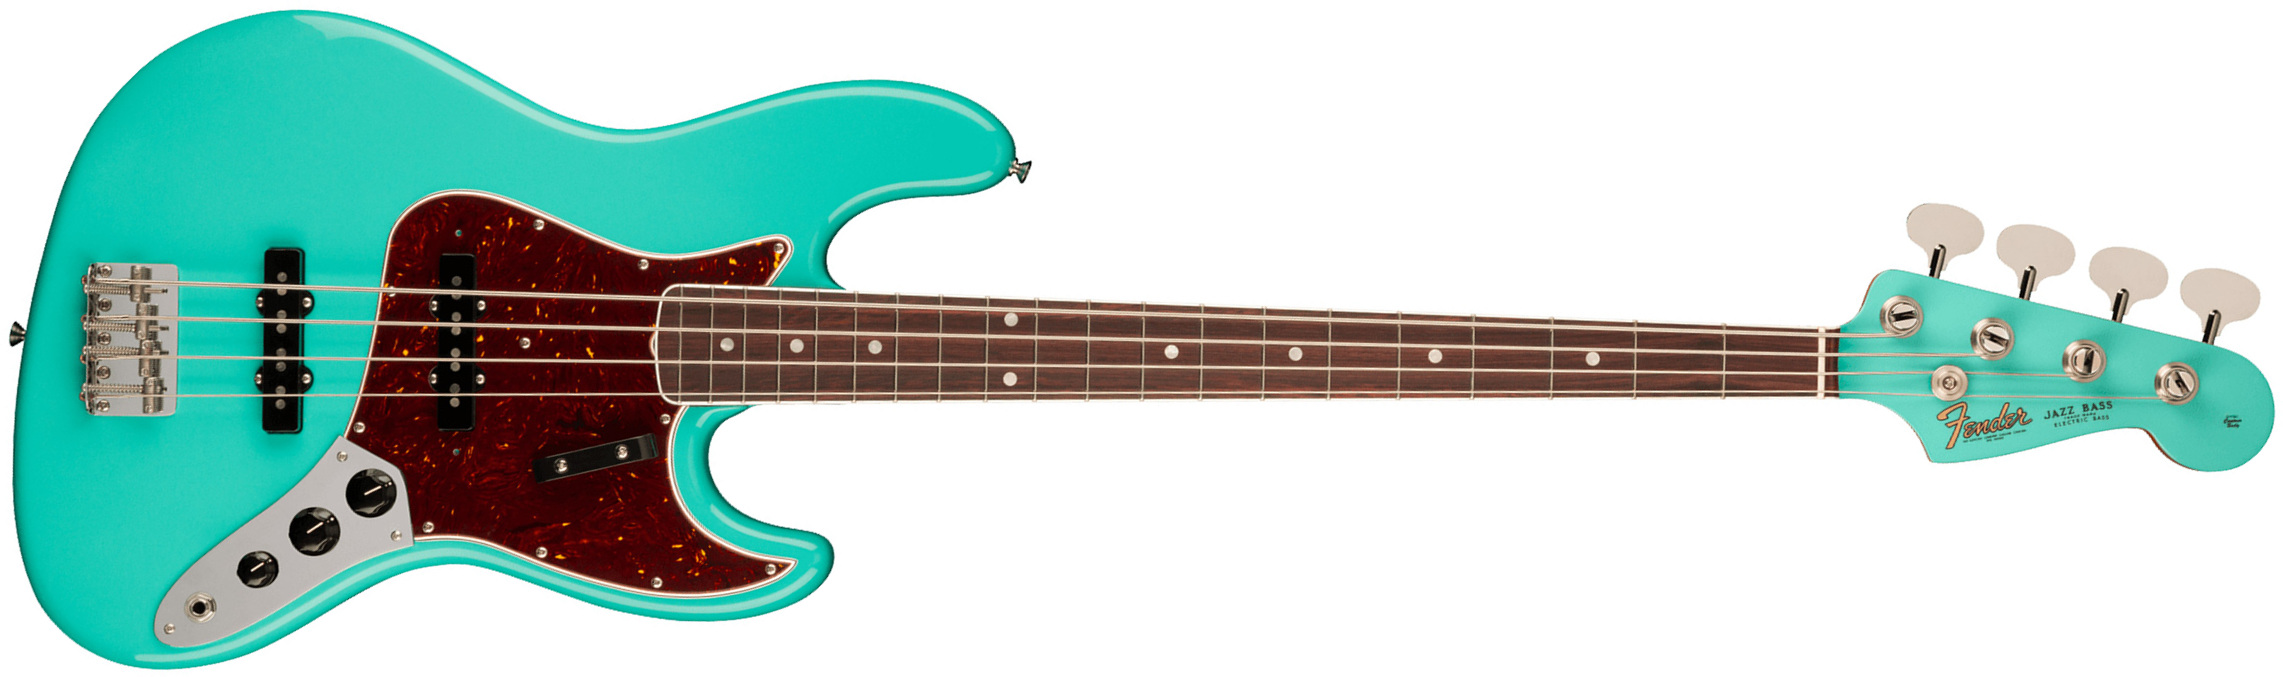 Fender Jazz Bass 1966 American Vintage Ii Usa Rw - Sea Foam Green - Bajo eléctrico de cuerpo sólido - Main picture